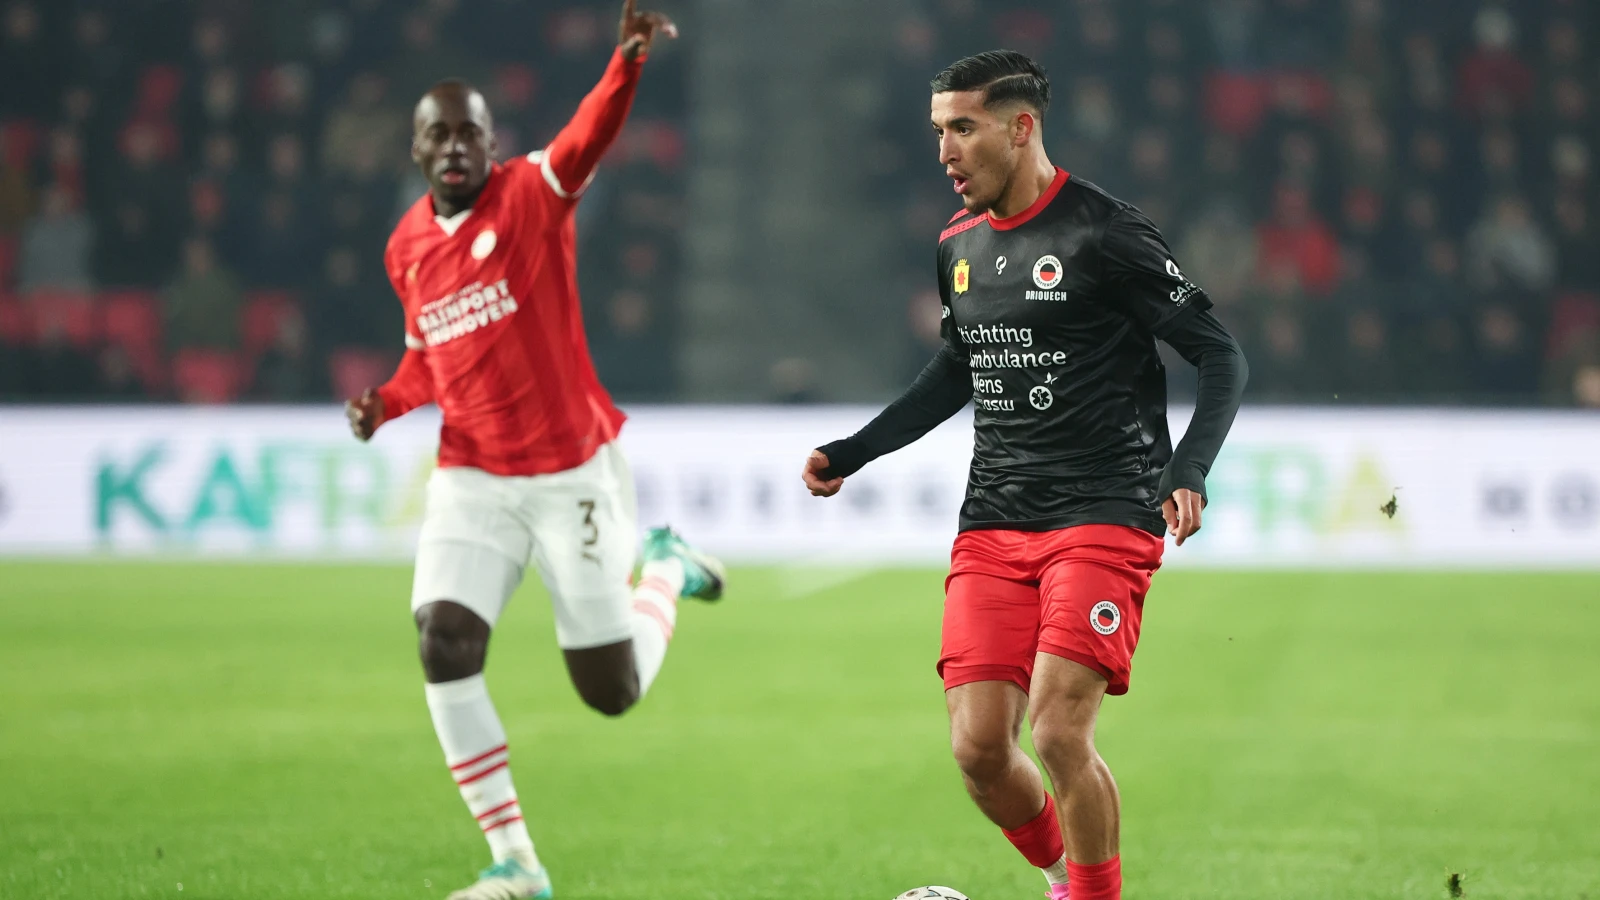 'Feyenoord stopt met onderhandelen over komst Driouech'